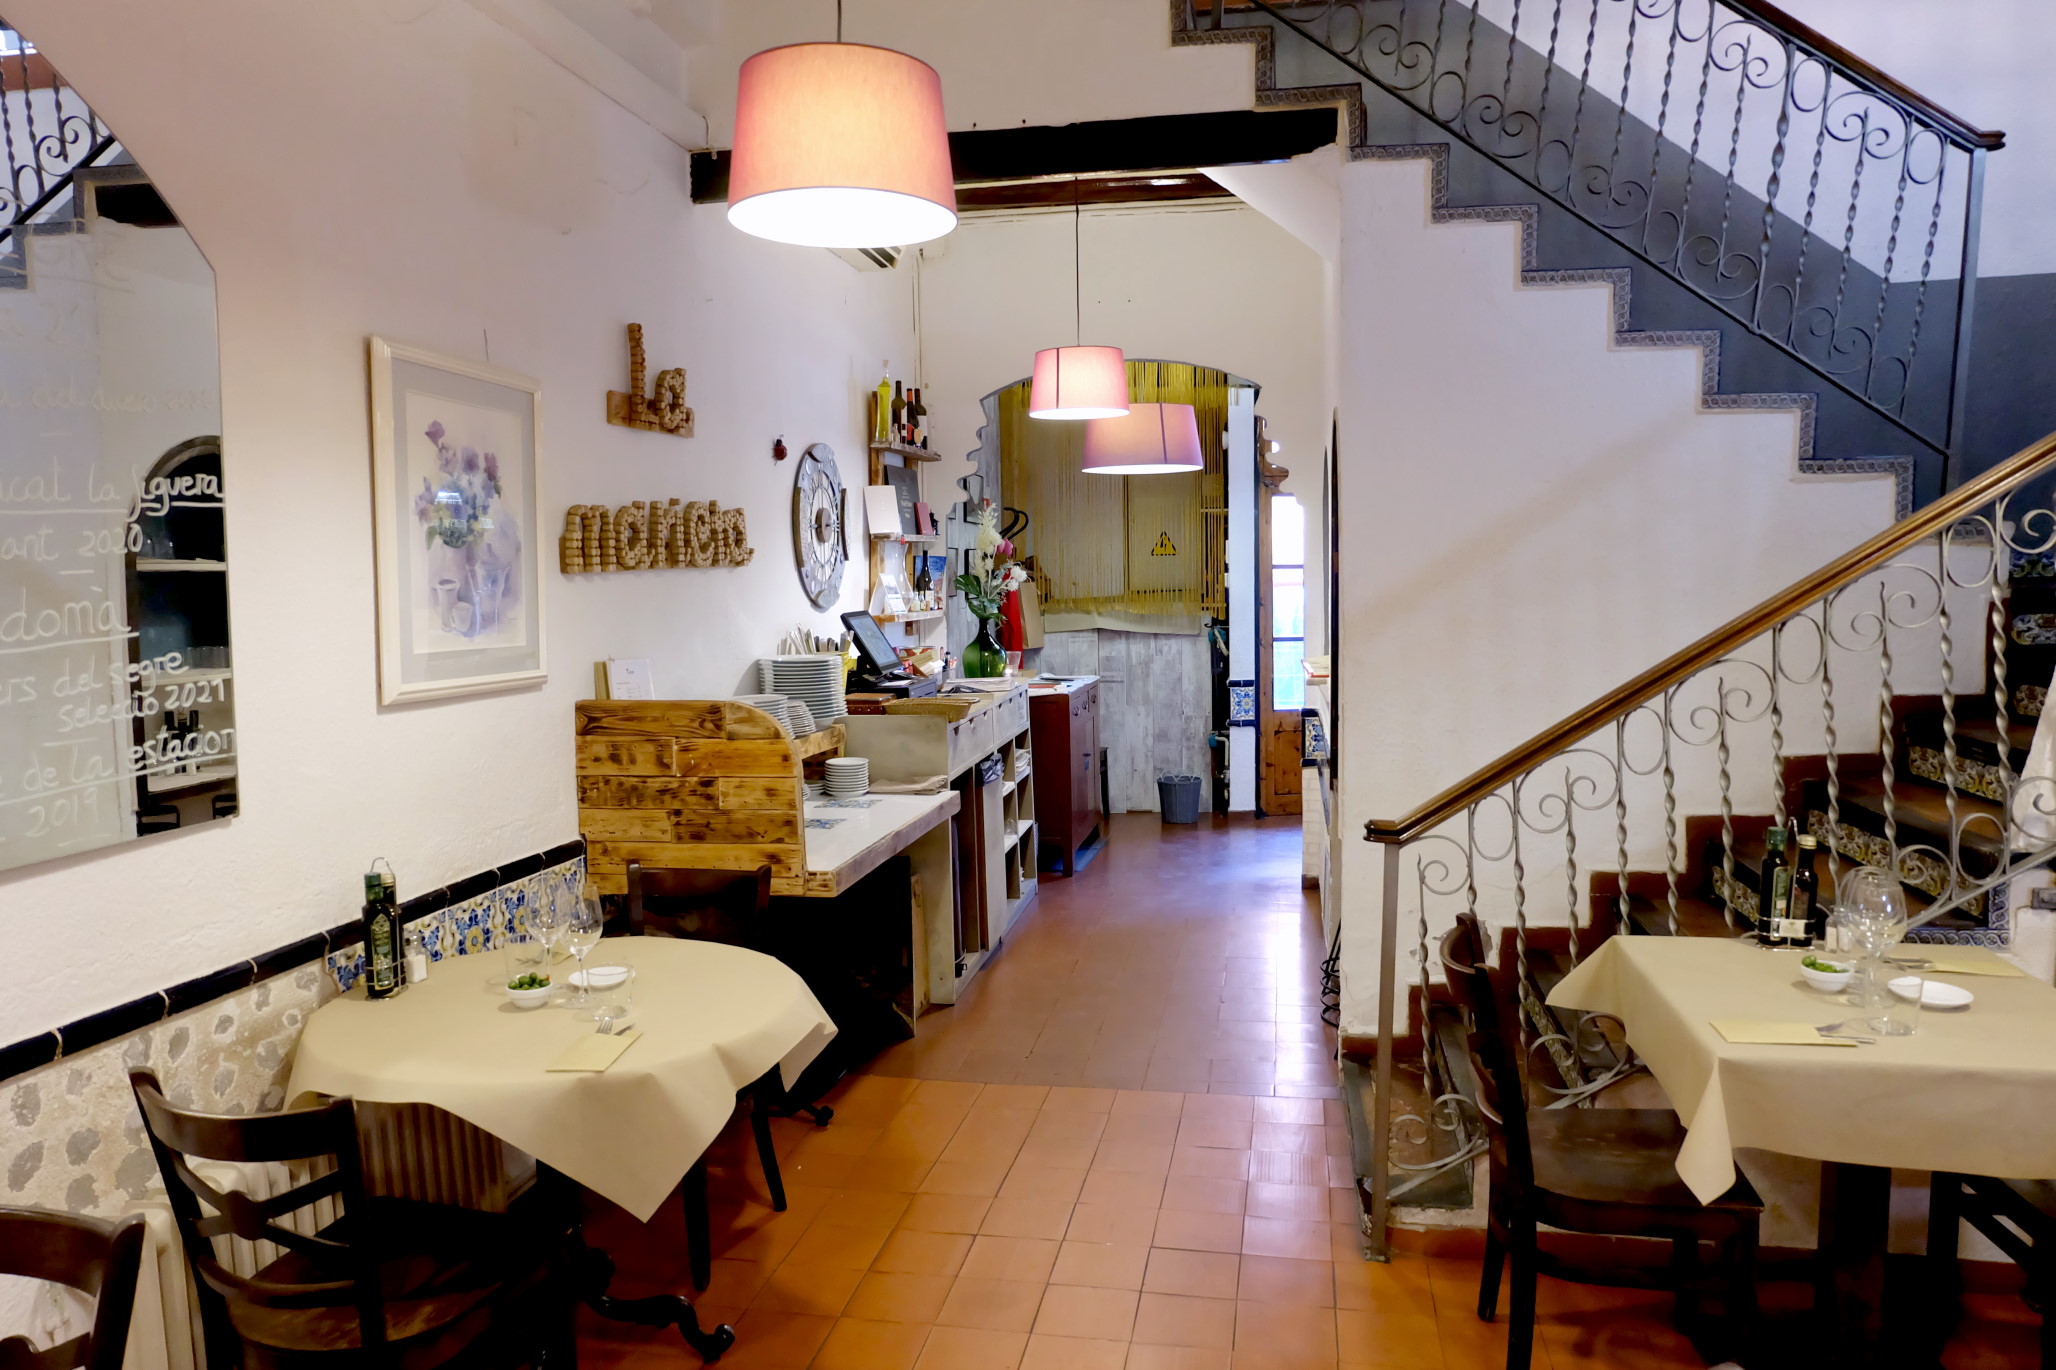 Restaurant La Marieta Mollet Valles cocina típica catalana y vasca